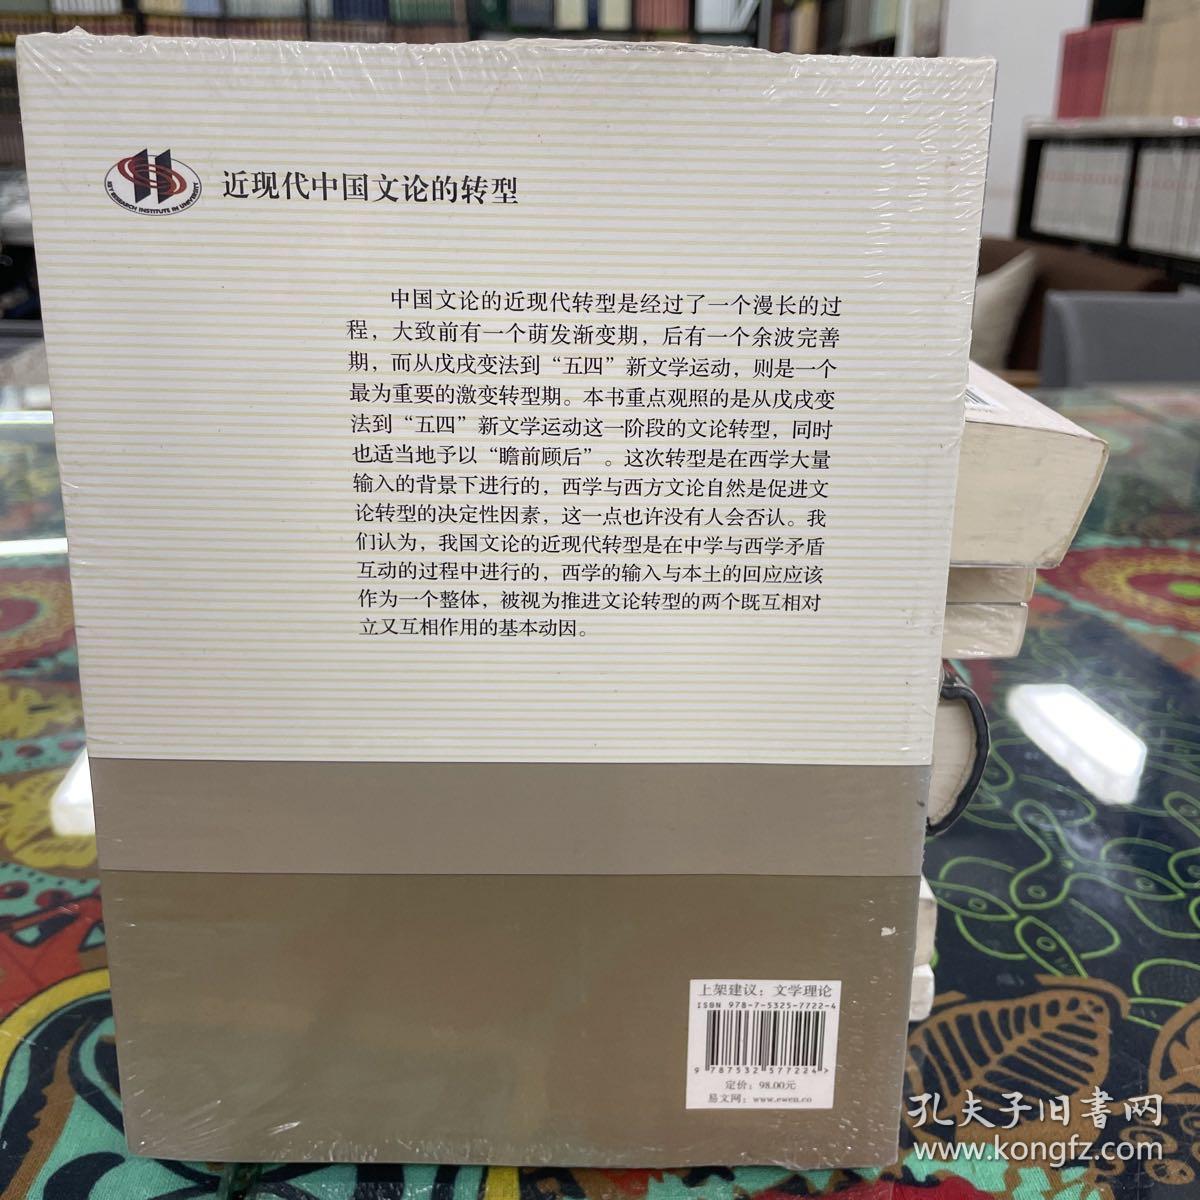 近现代中国文论的转型